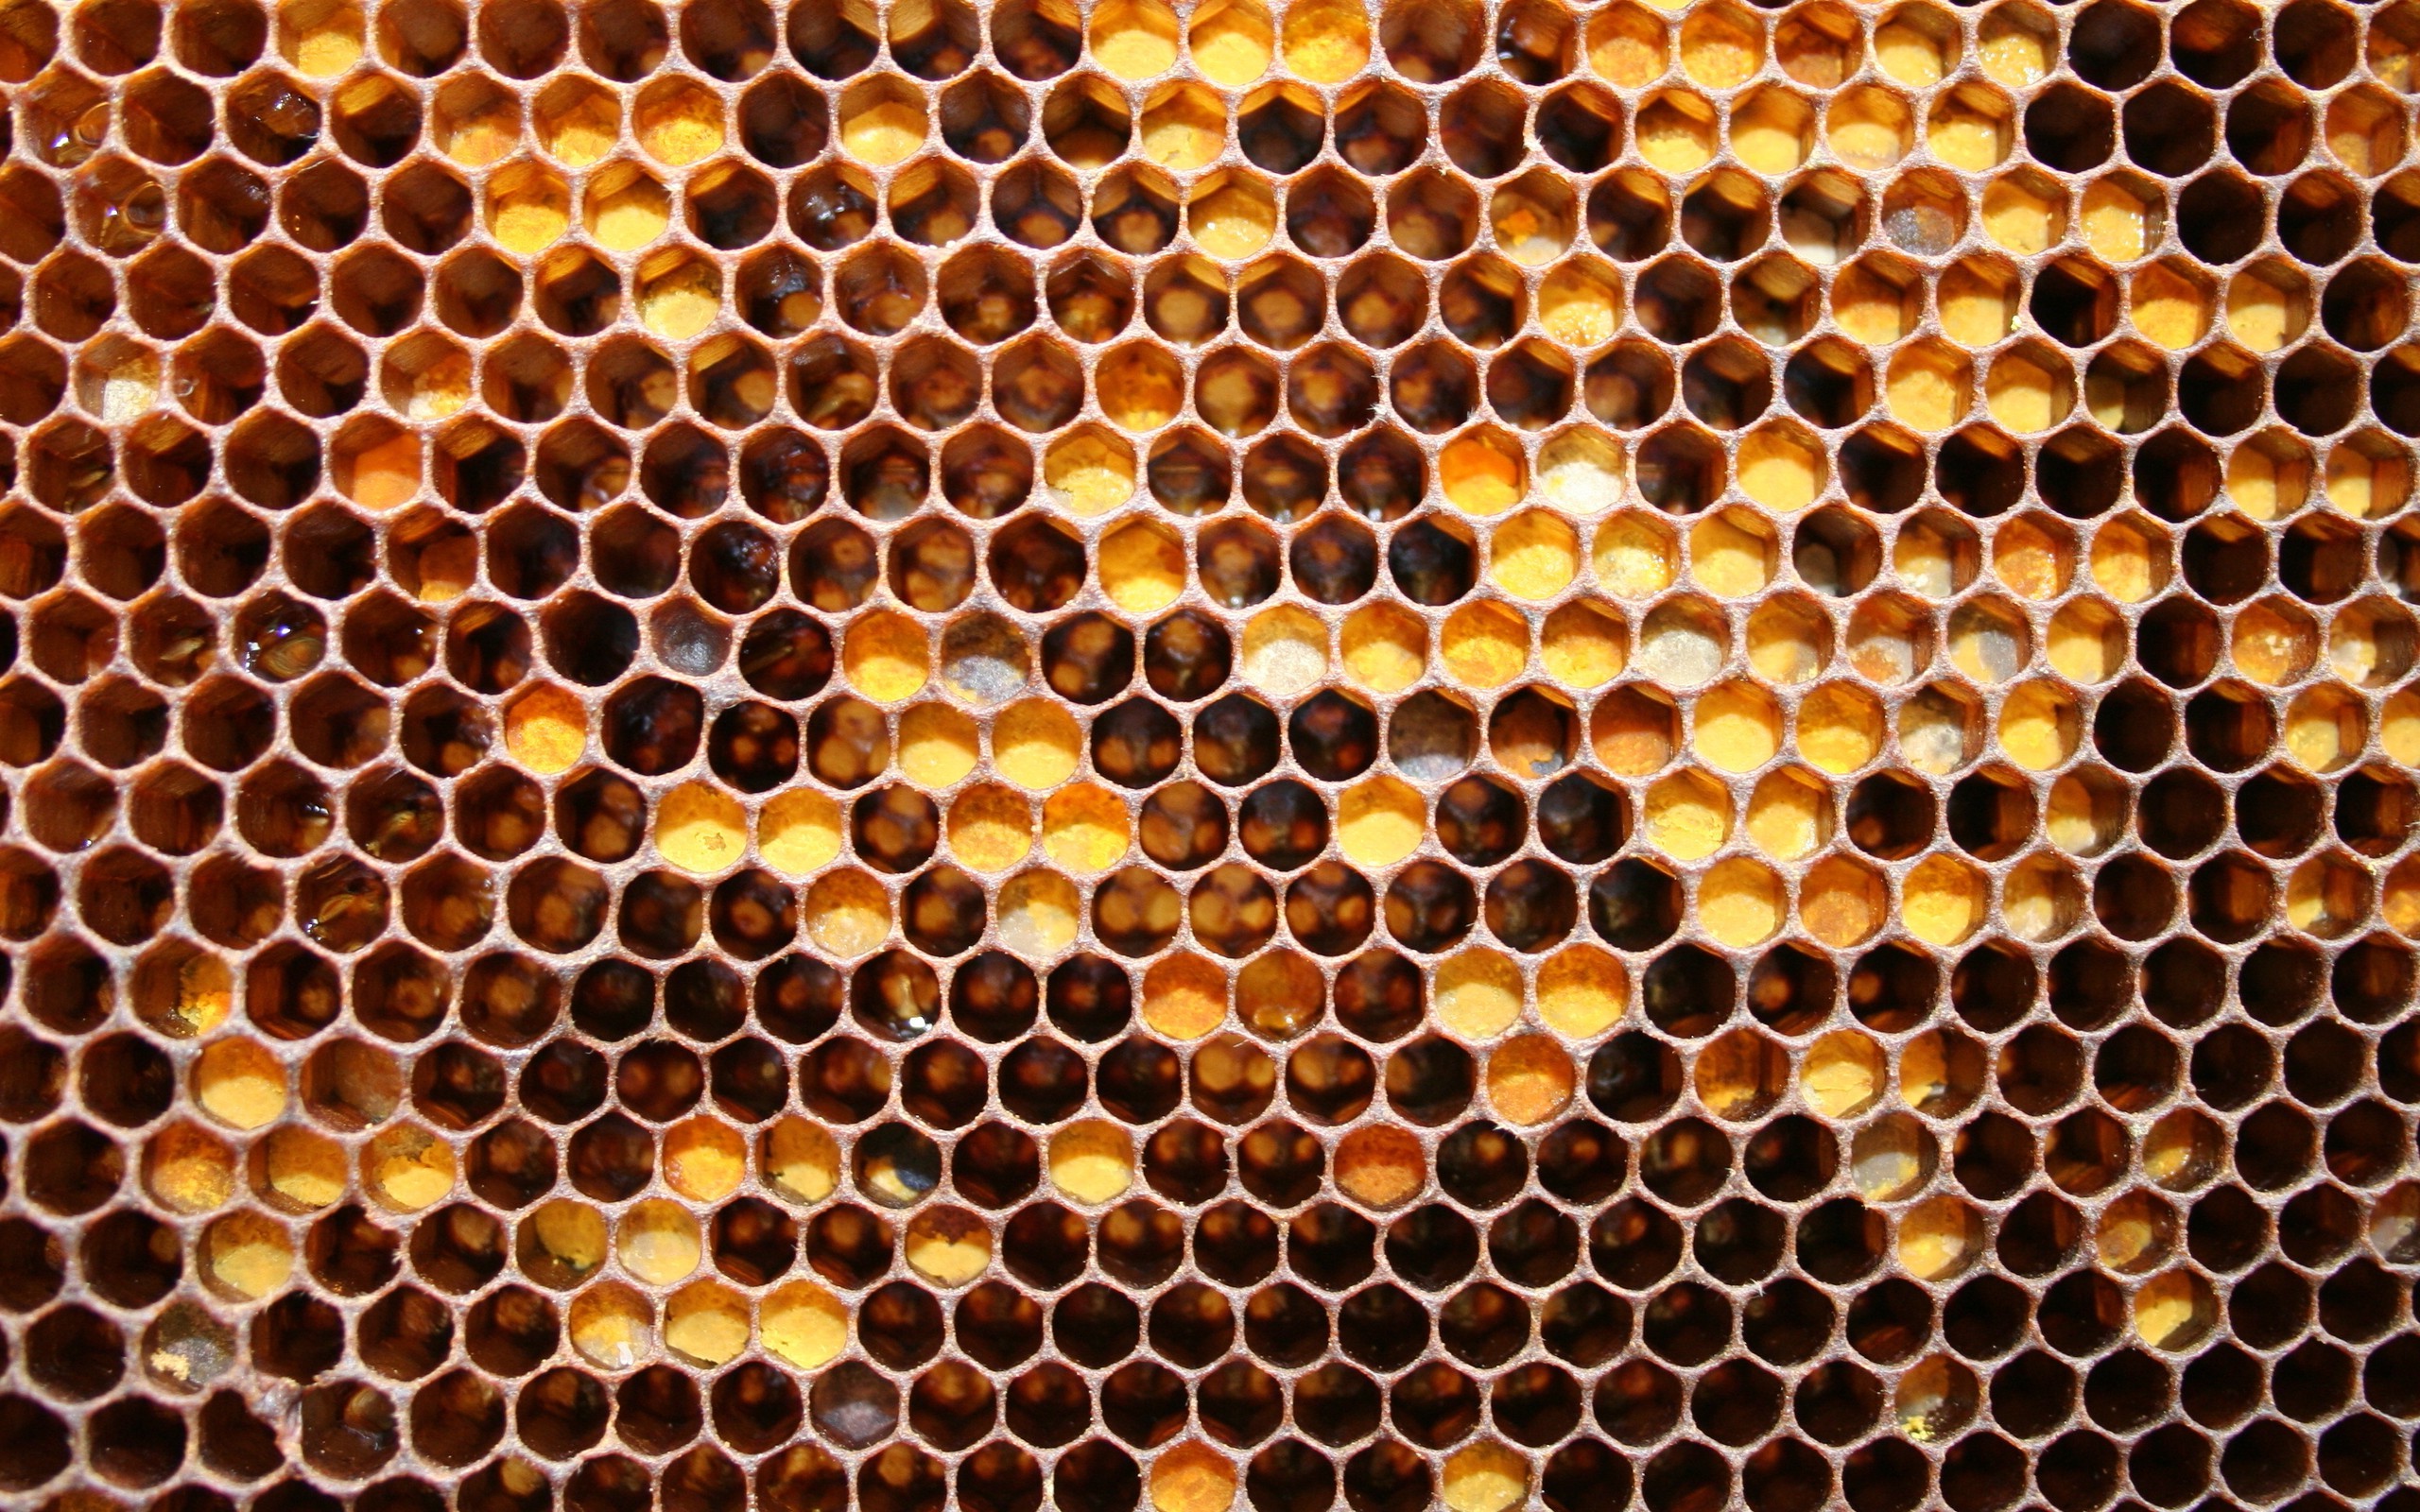 General 2560x1600 nature wax closeup honey comb